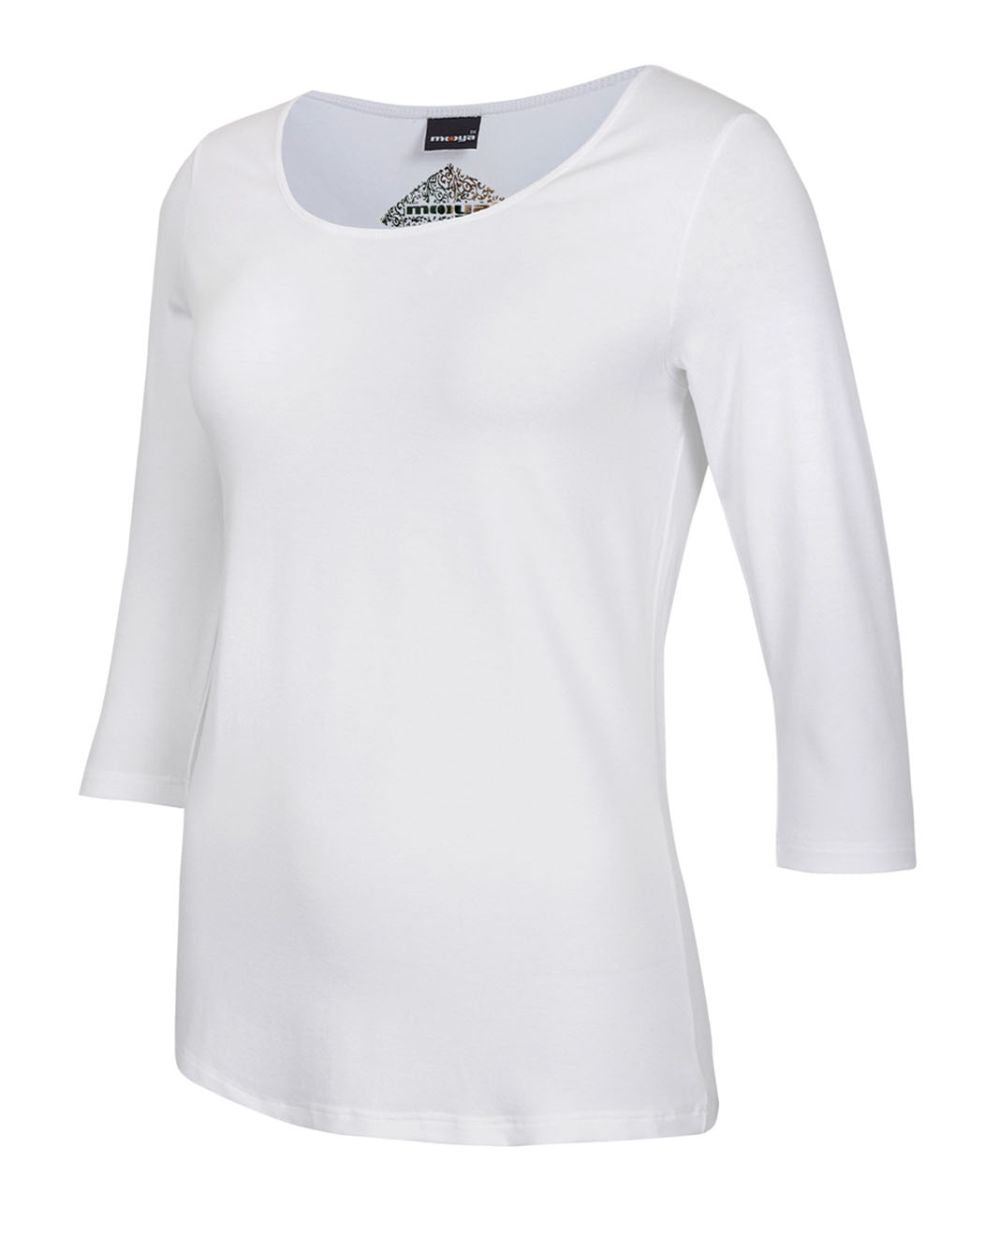 Damen-Shirt Angela, 3/4-Arm, Rundhalsausschnitt, Farbe White